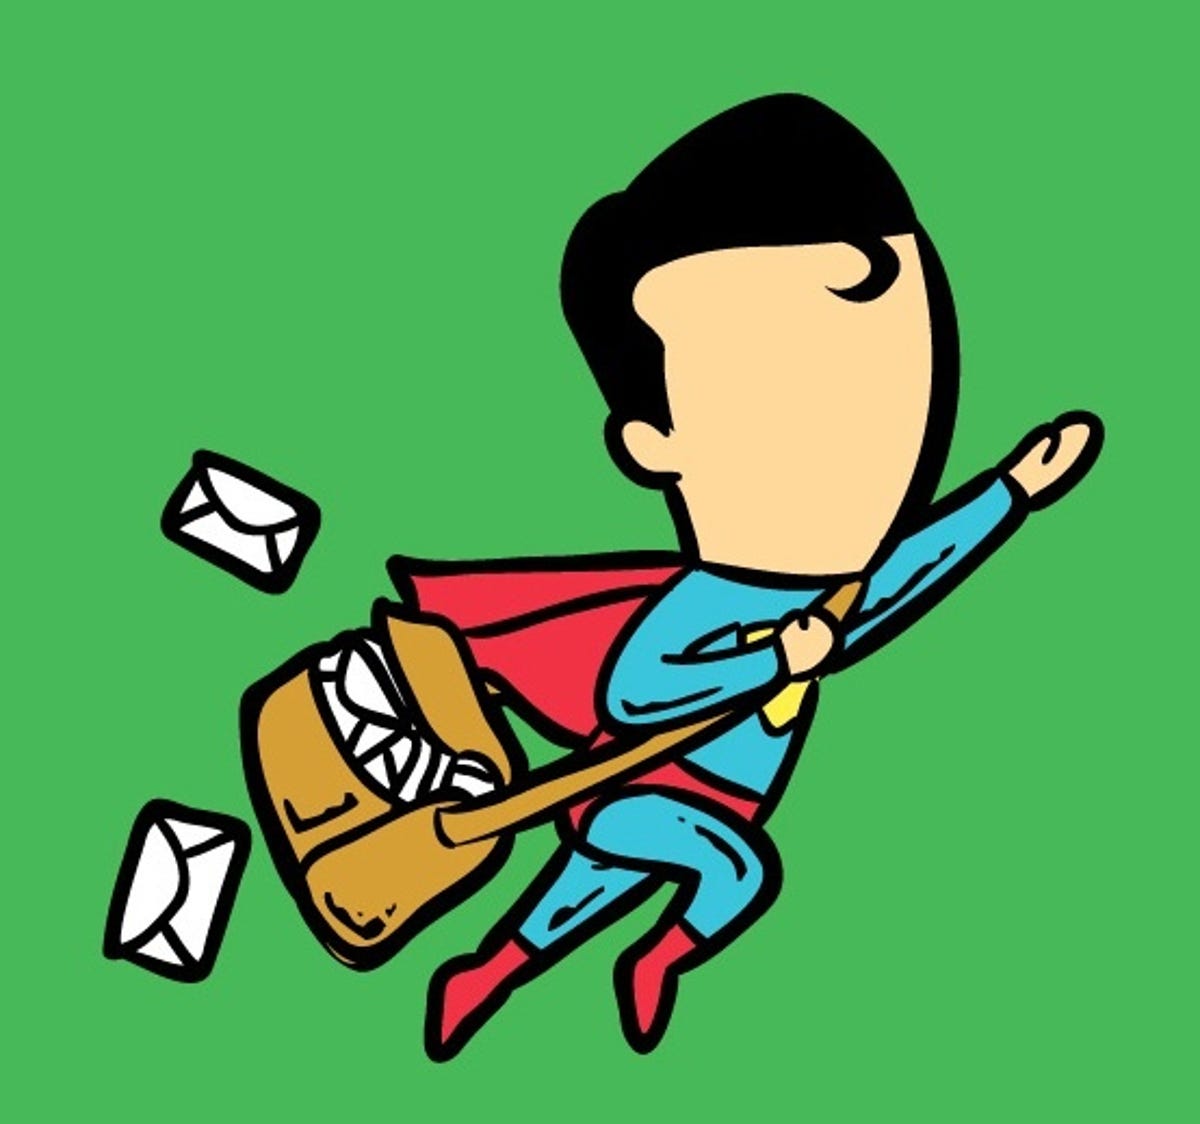 Superman delivering mail